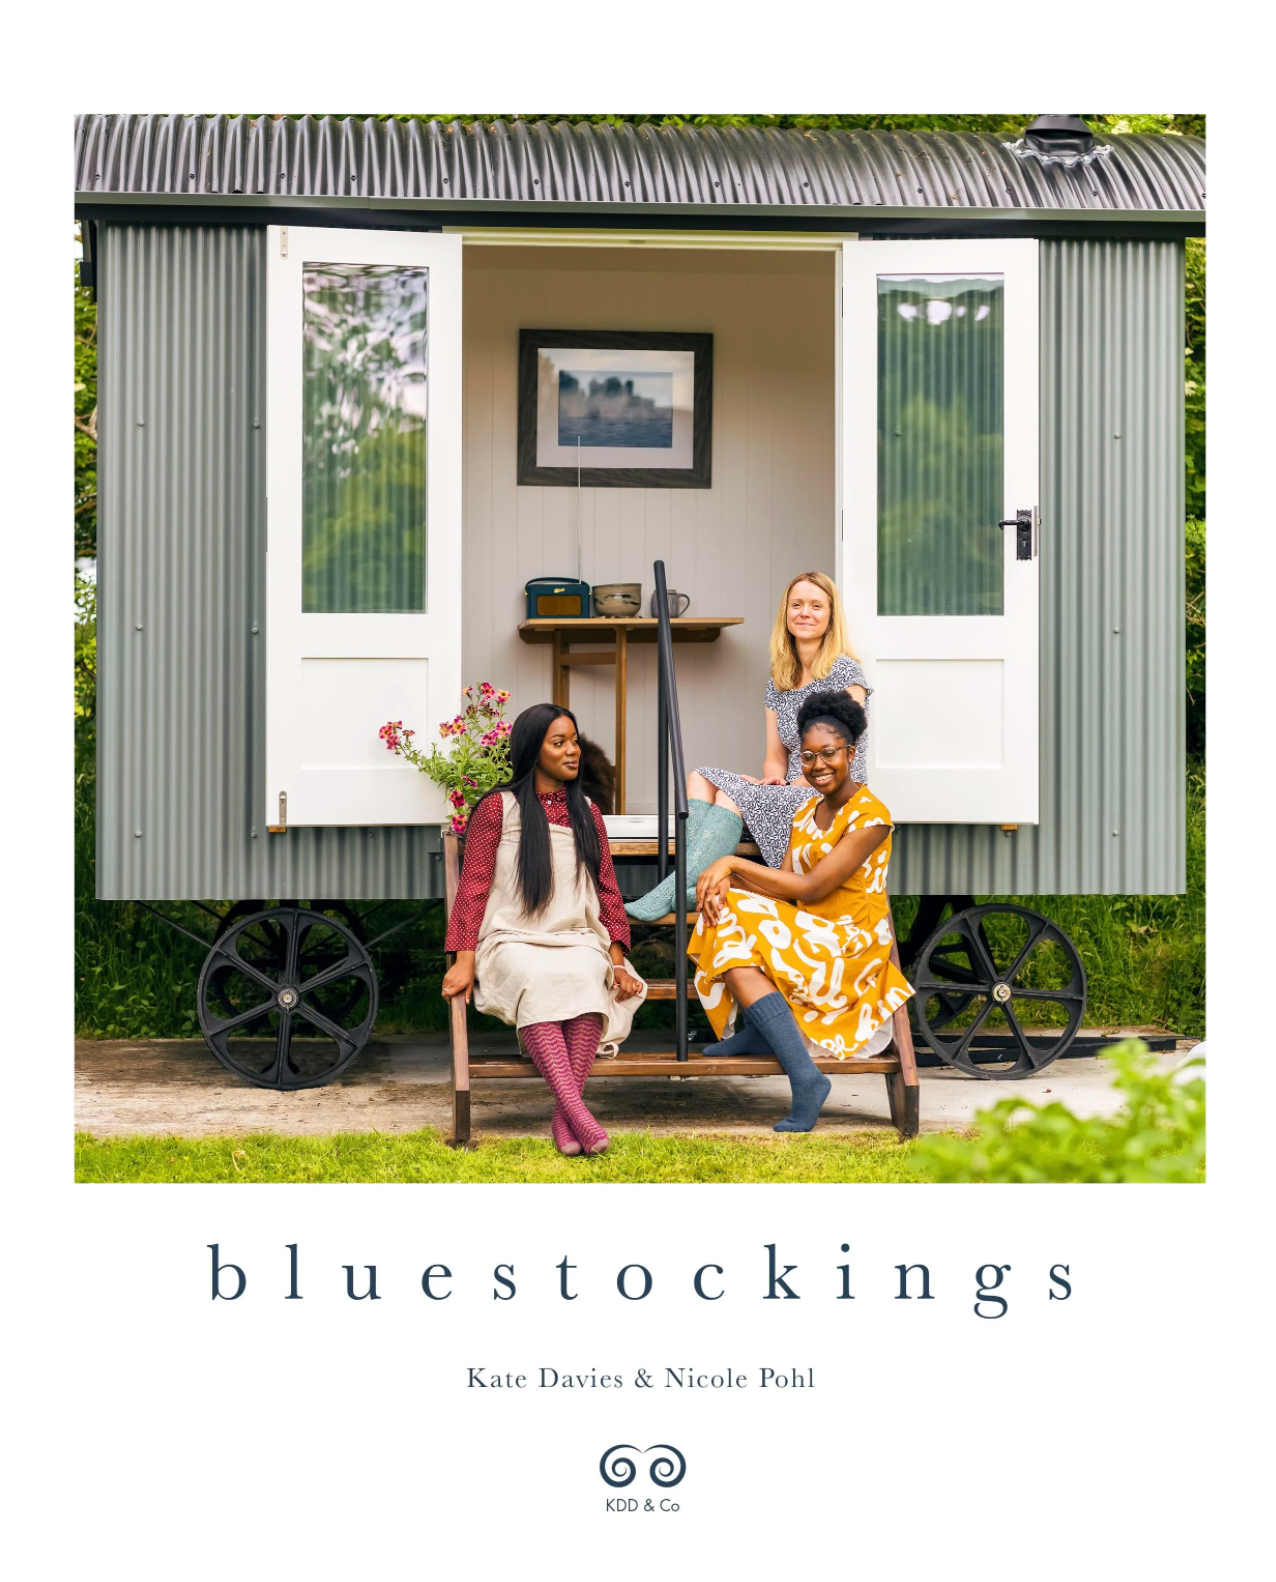 Bluestockings - Kate Davies Kate Davies Designs